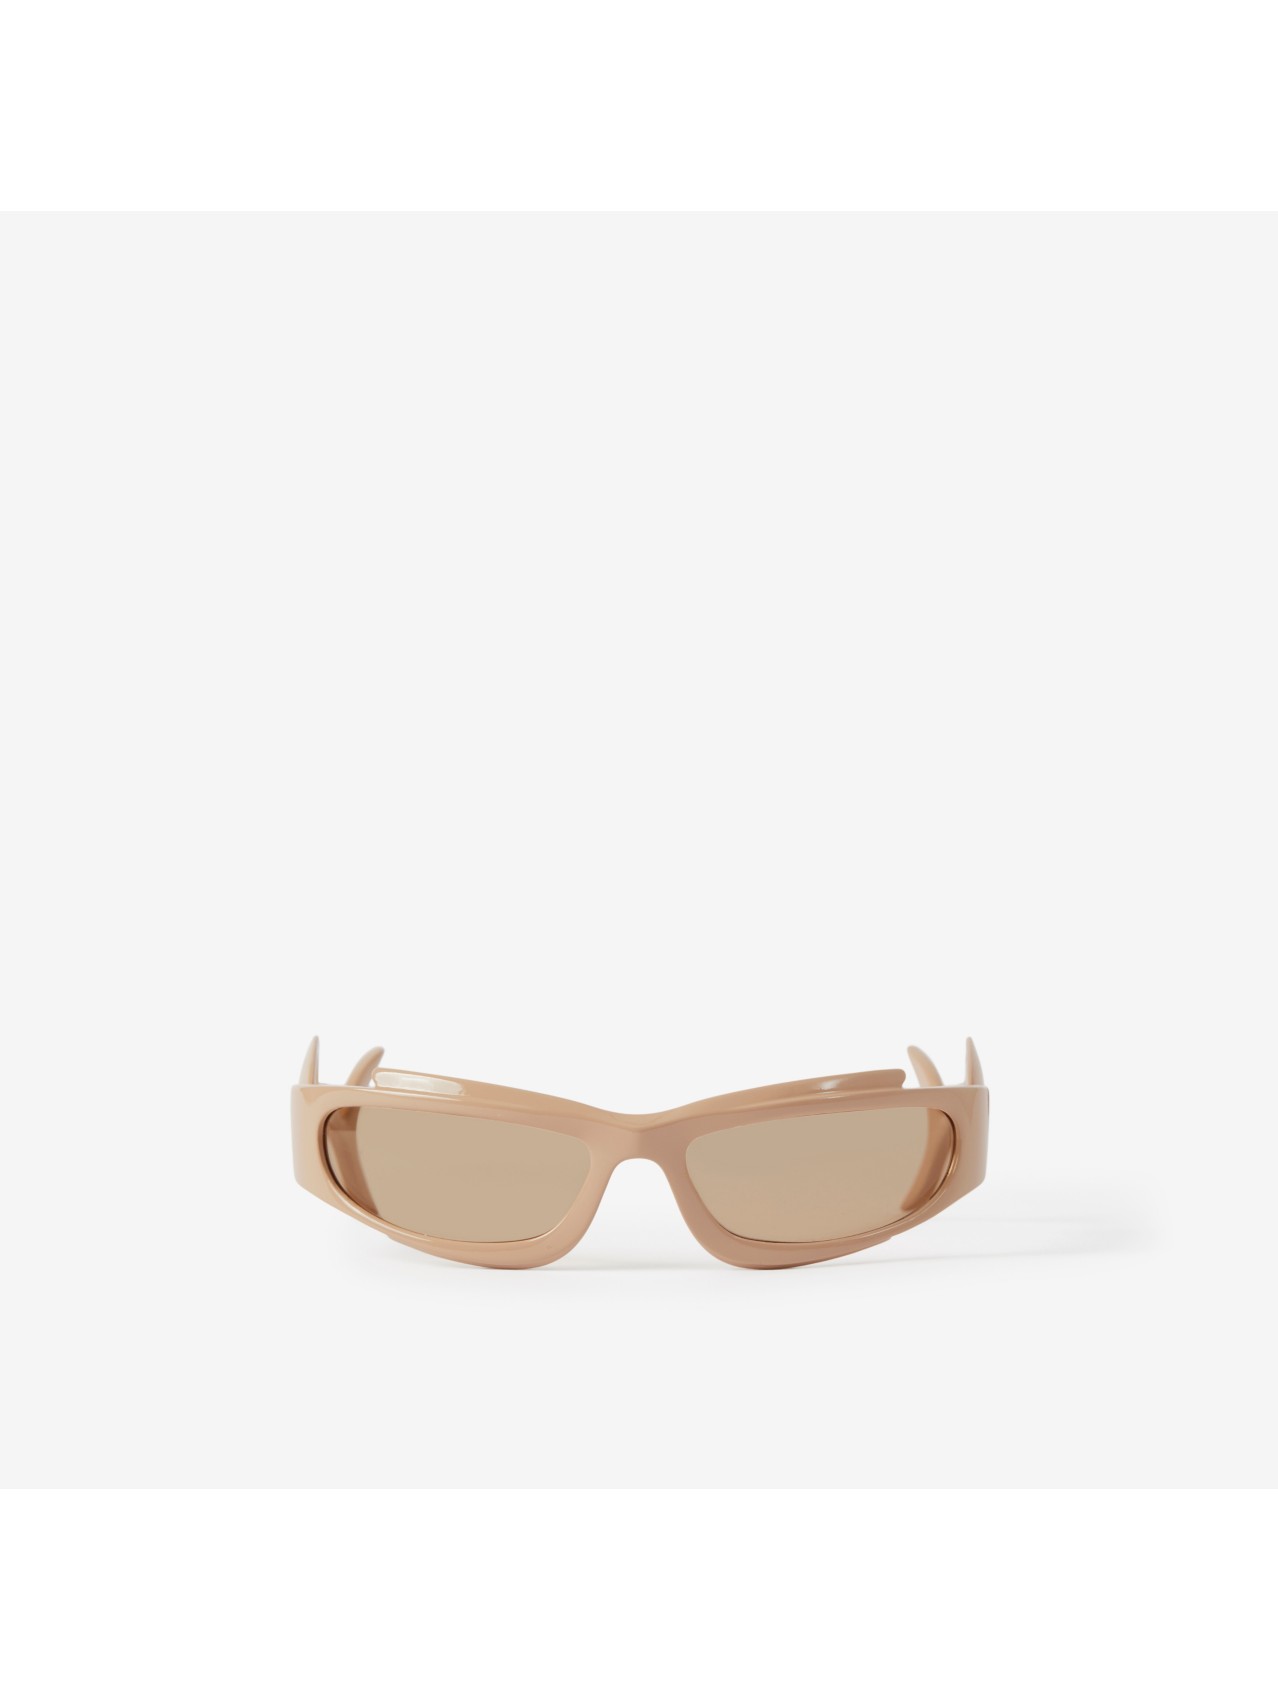 Women's Designer Eyewear | Opticals & Sunglasses | Burberry® Official